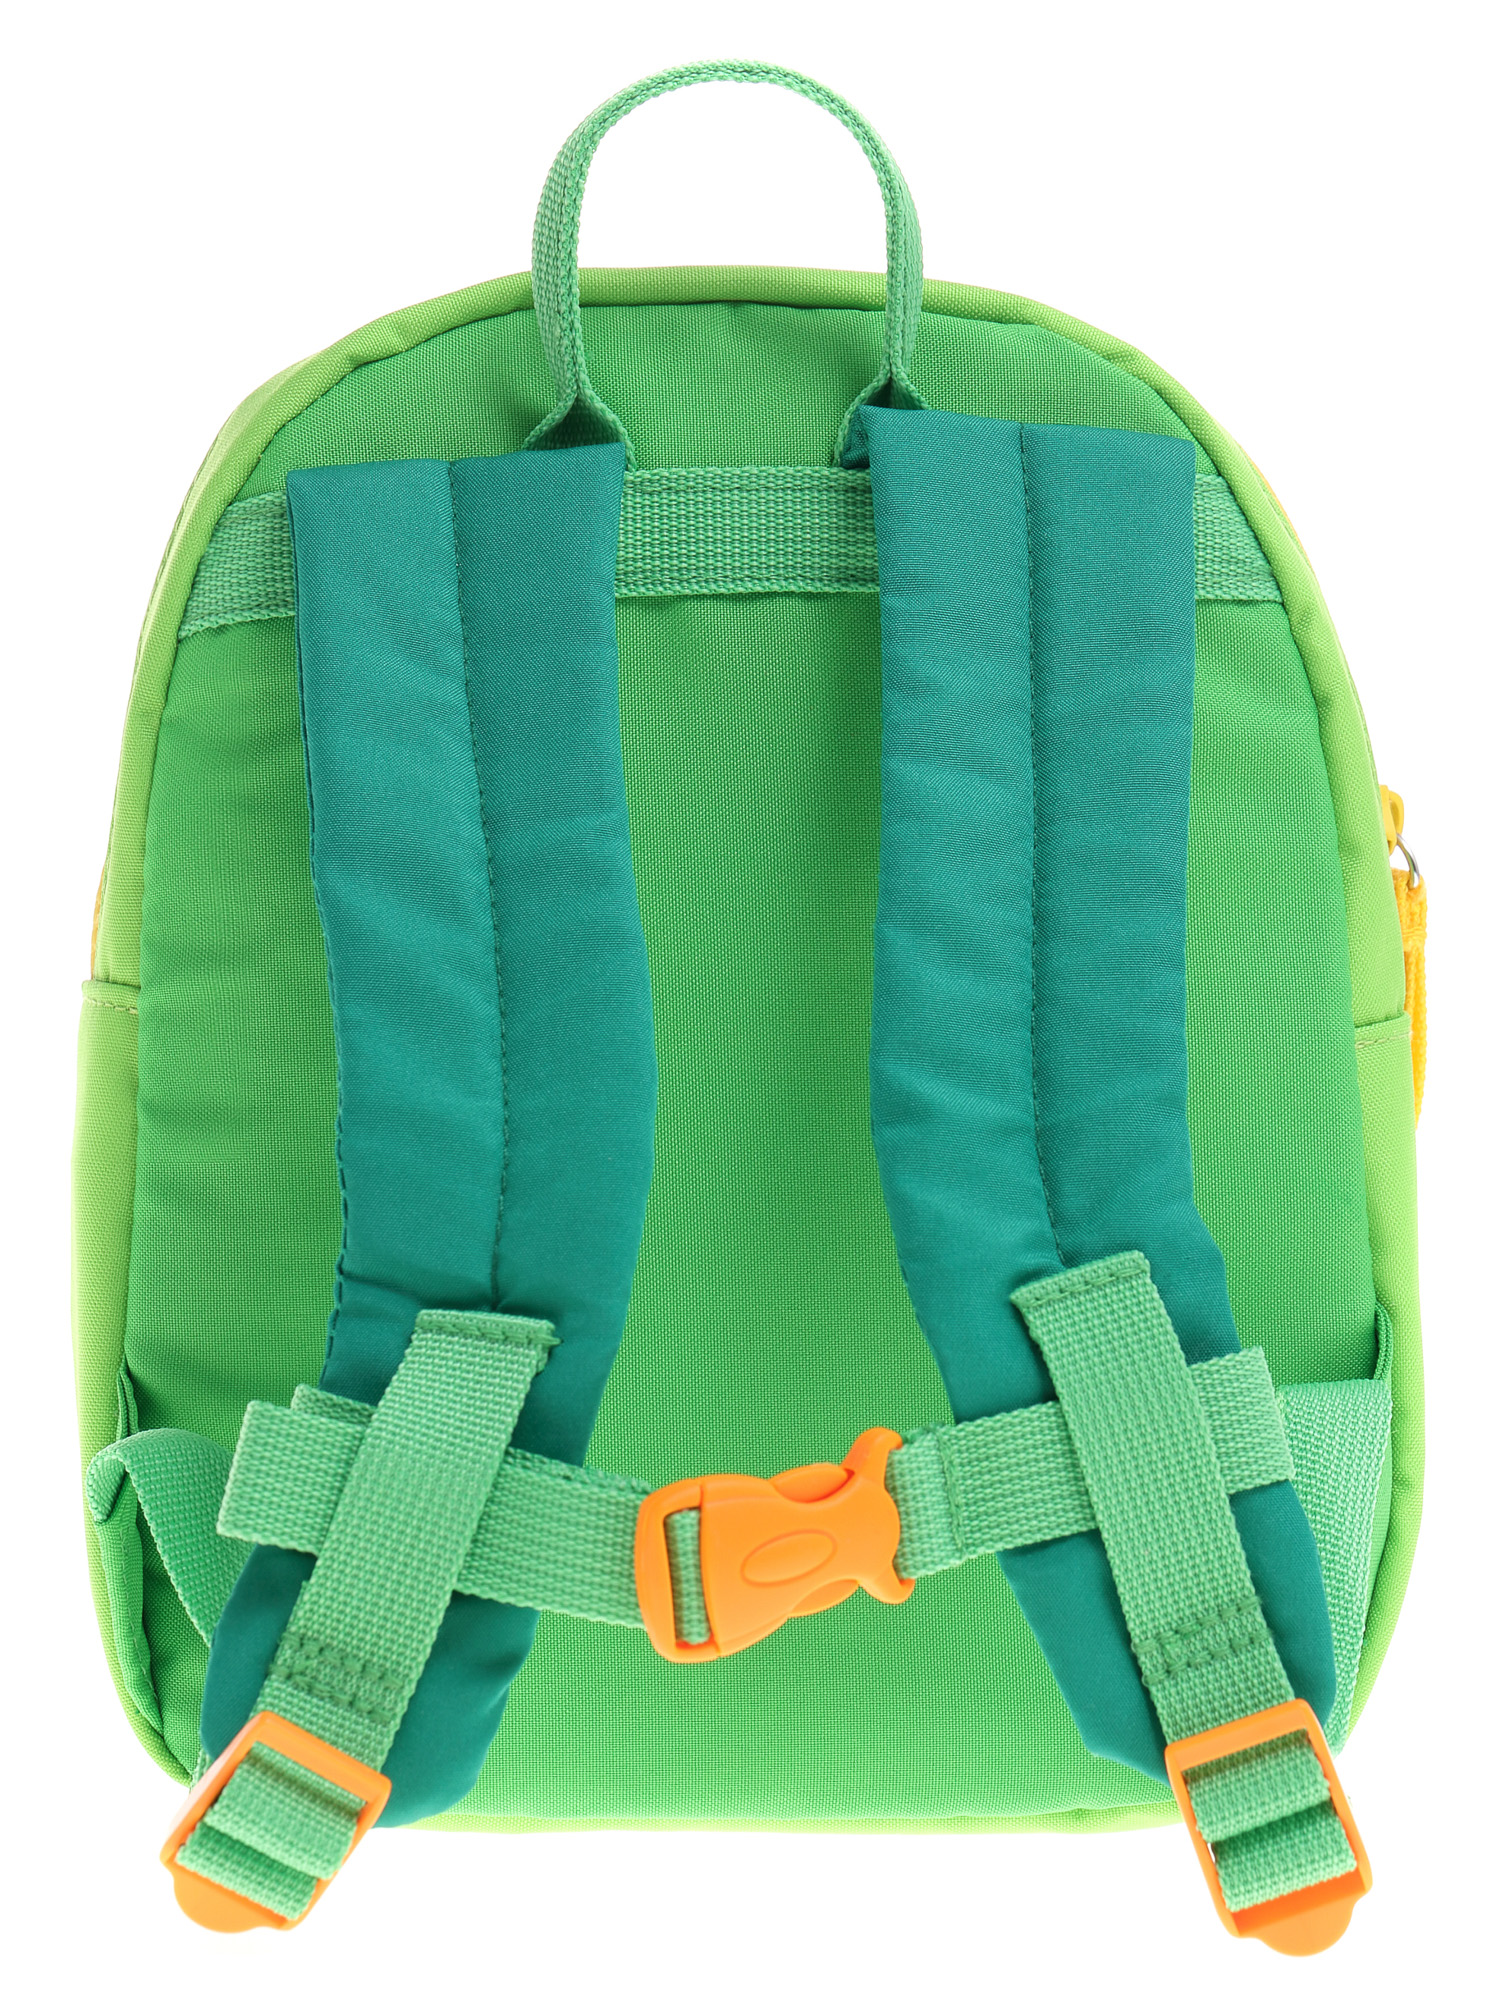 Backpack Dragon for children